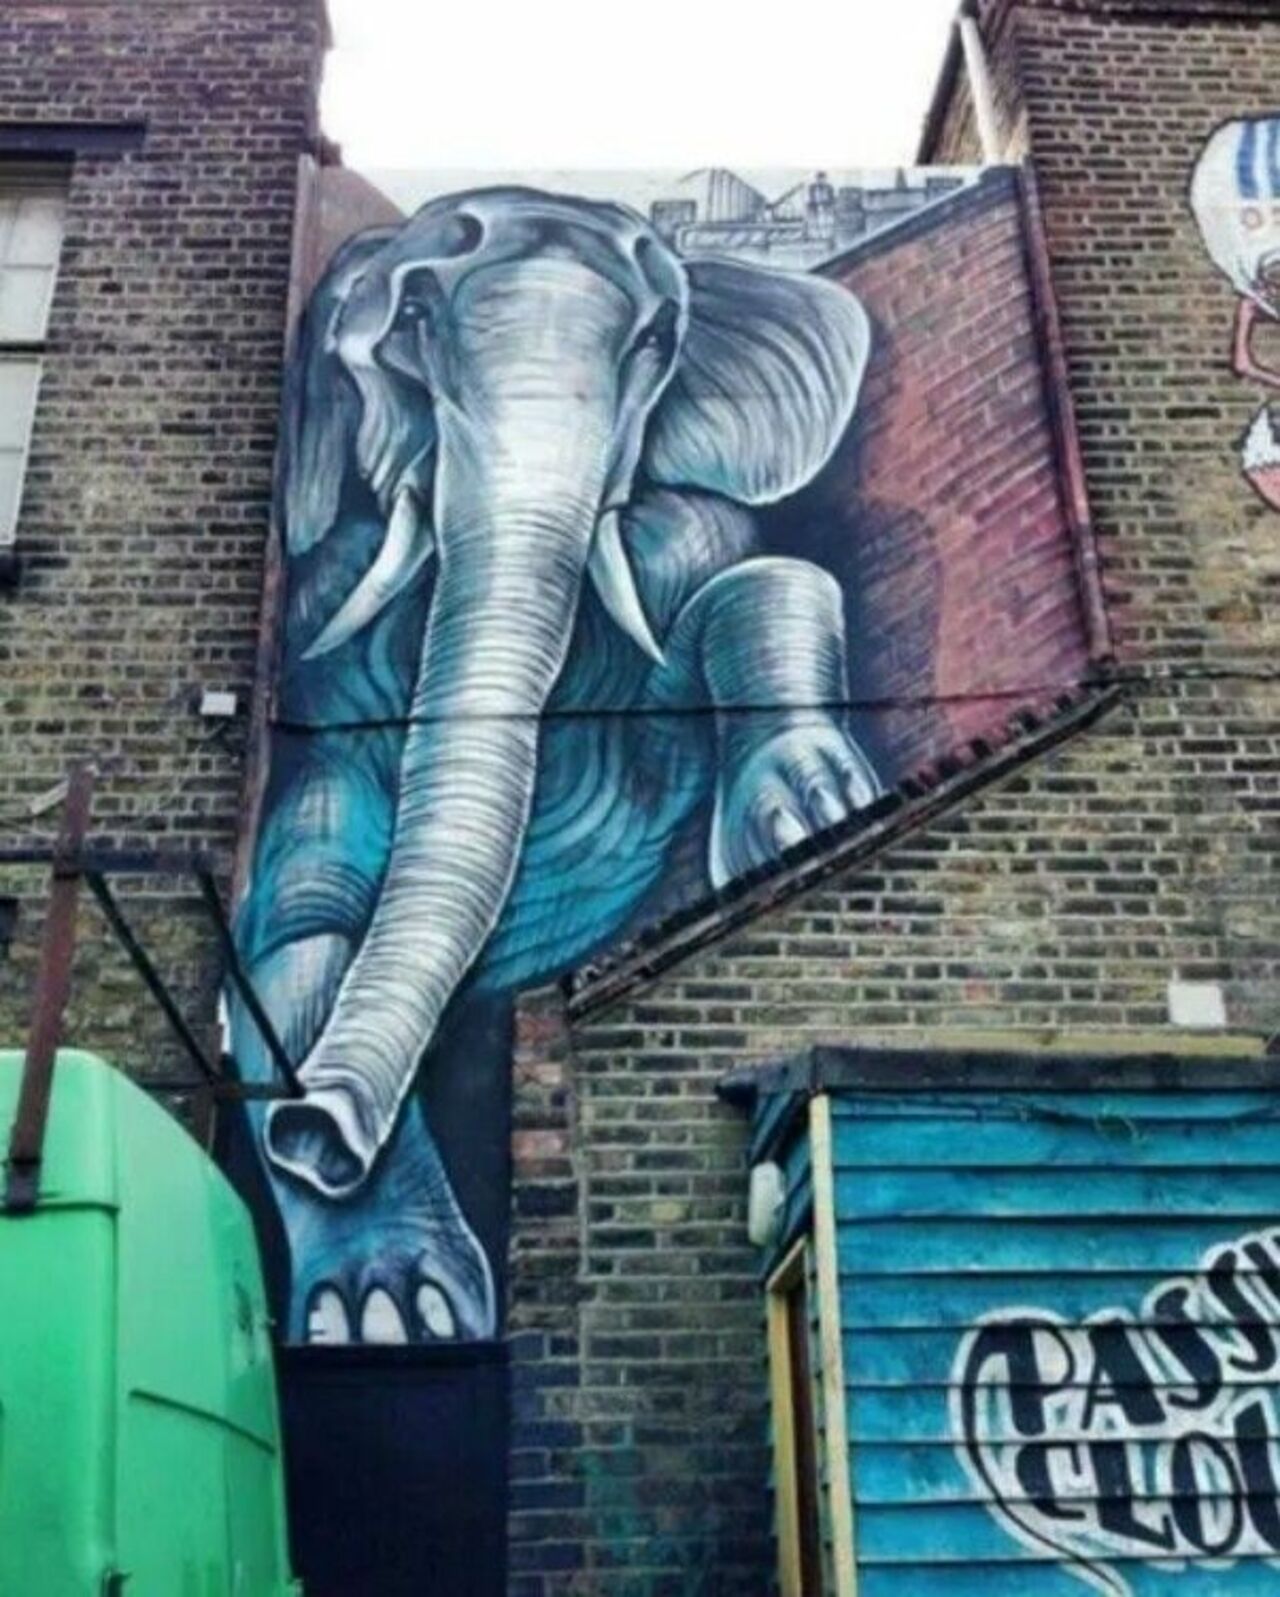 Mural by Shaun Burner, located in London, UK#streetart #mural #graffiti #art https://t.co/h4QkRR54VR